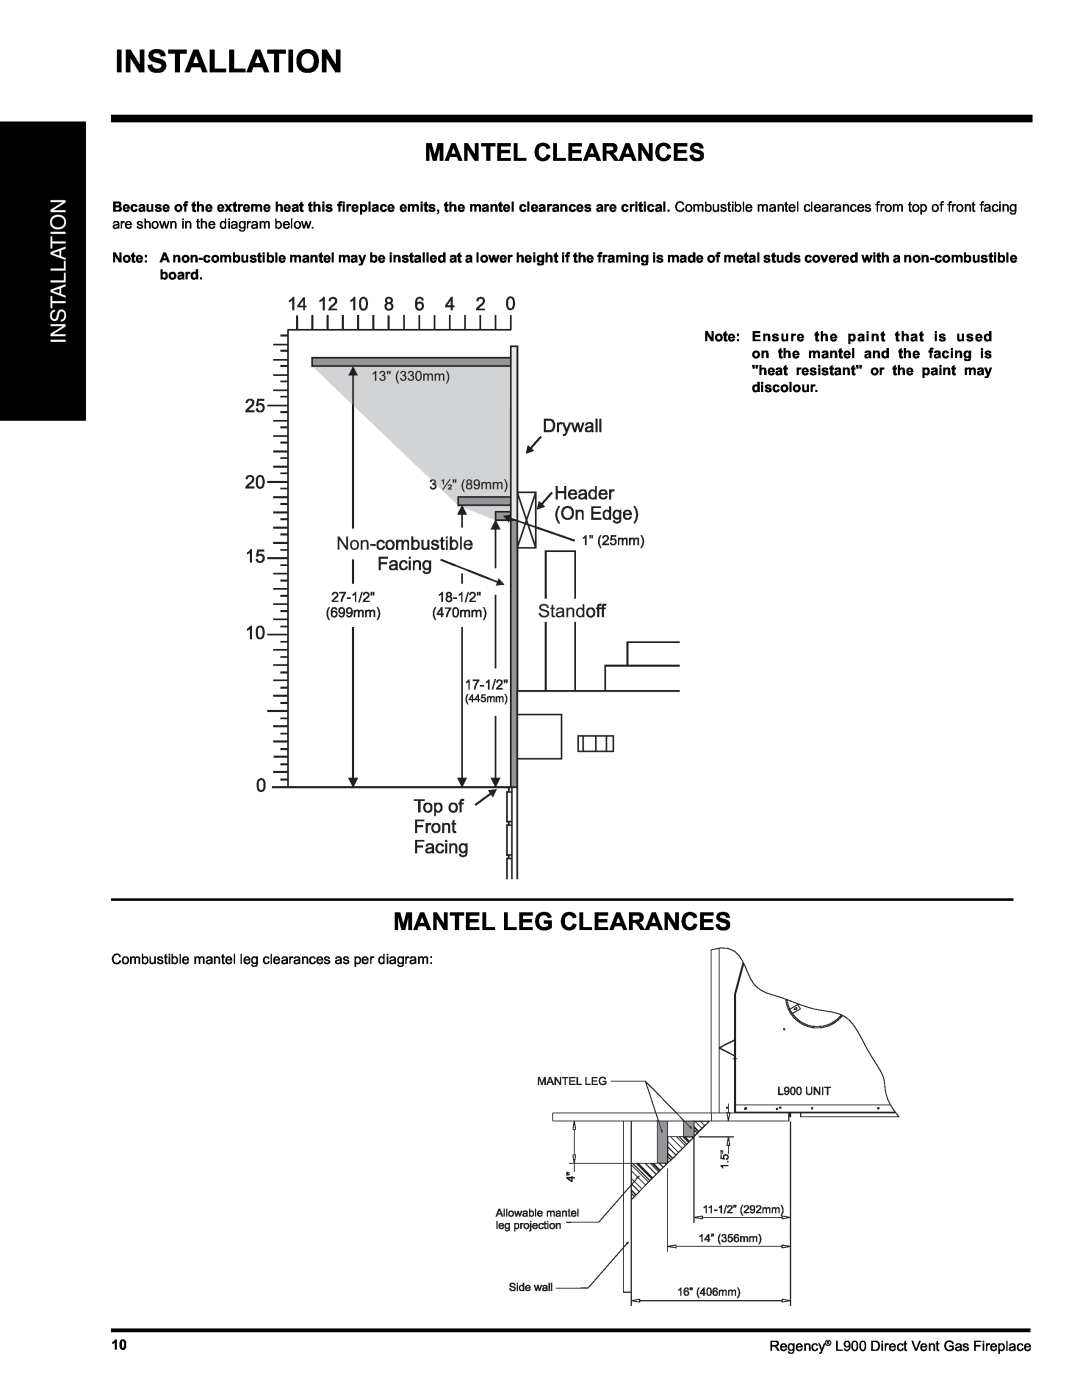 Regency L900-LP, L900-NG installation manual Installation, Mantel Clearances, Mantel Leg Clearances 